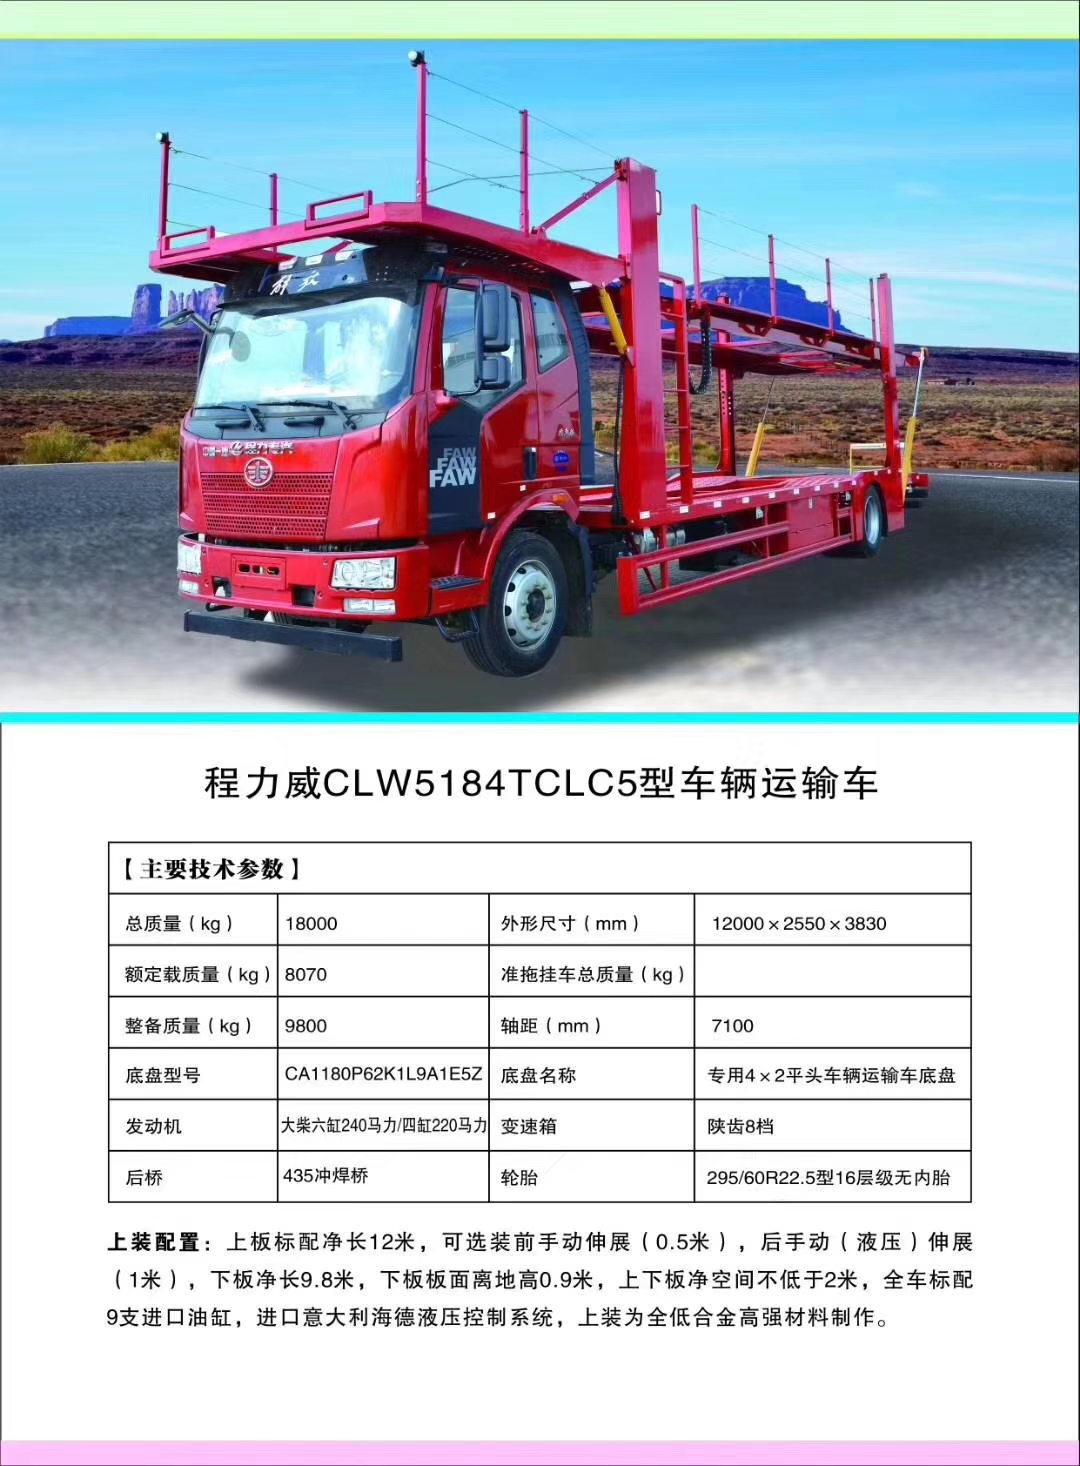 j9.com(中国区)官方网站轿运车产品型号及配置